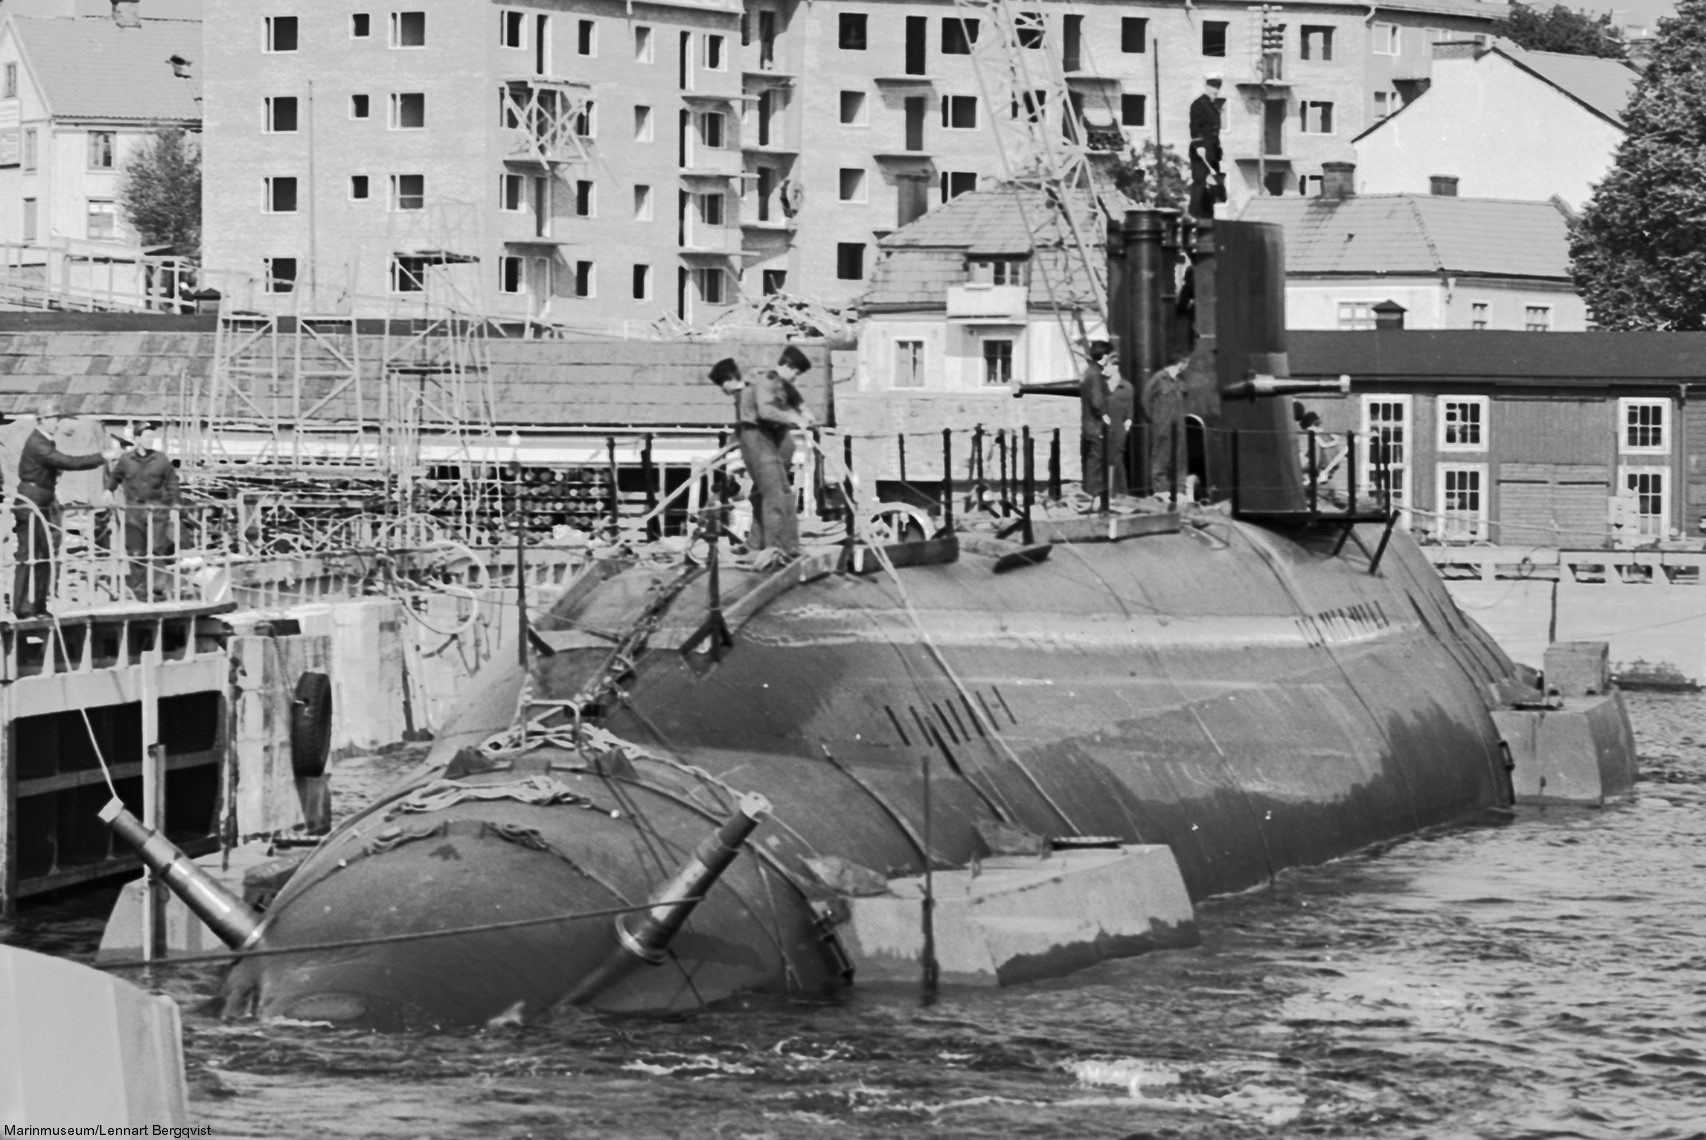 hswms hms sjöhästen shä sjöormen a11 class submarine ssk swedish navy svenska marinen försvarsmakten 10